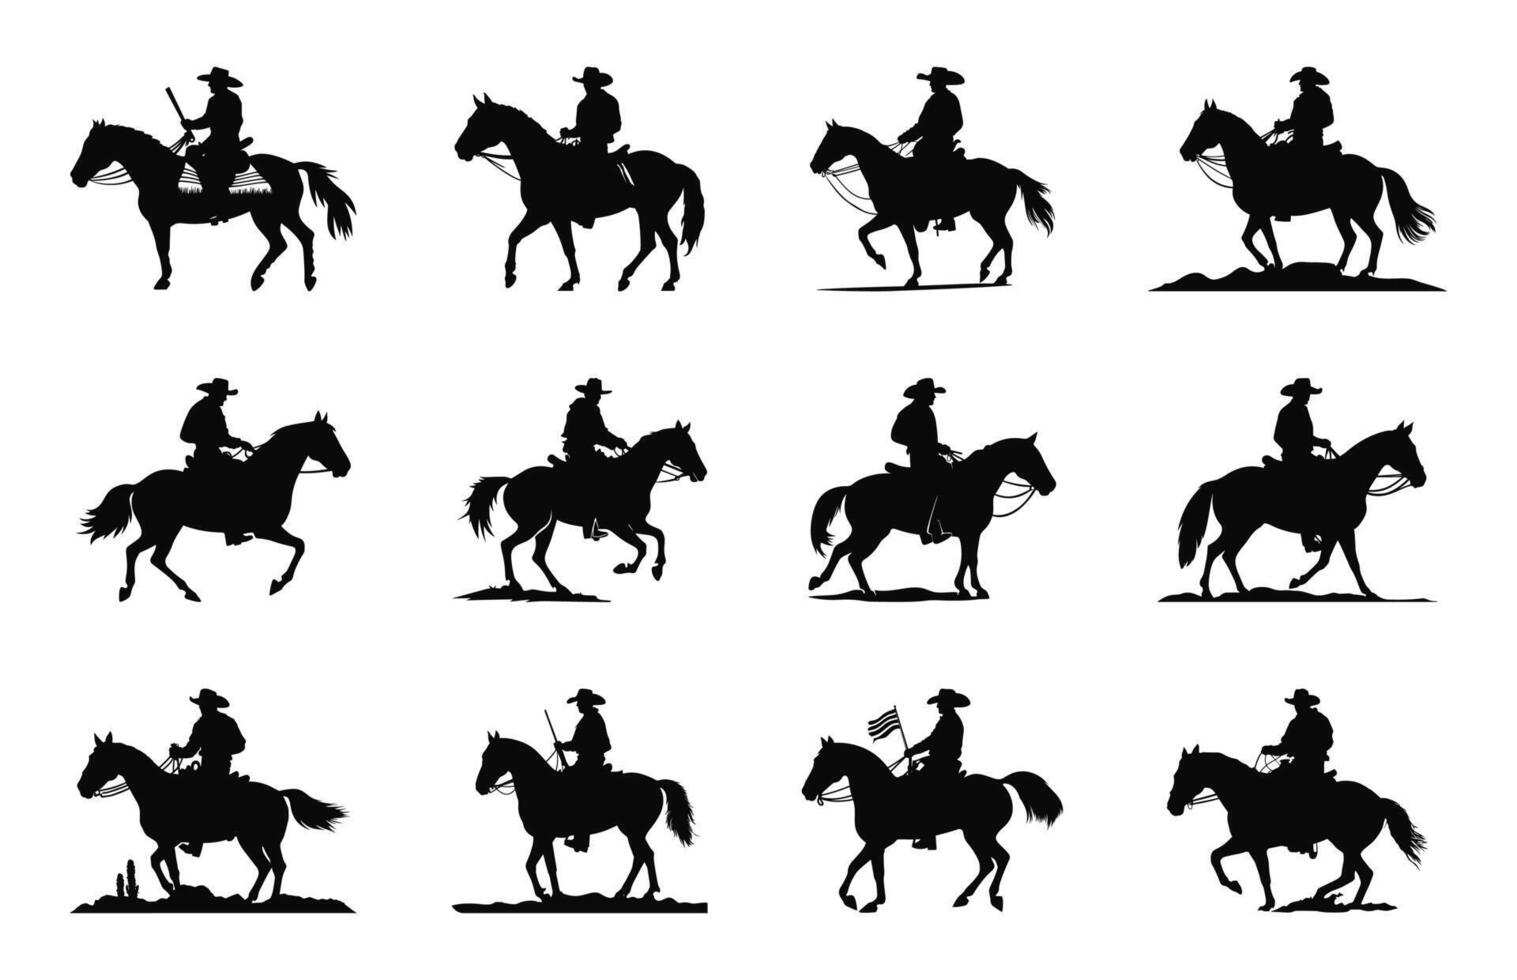 Mexikaner Cowboy Reiten ein Pferd Silhouetten Vektor Satz, charro Pferd schwarz Silhouette bündeln